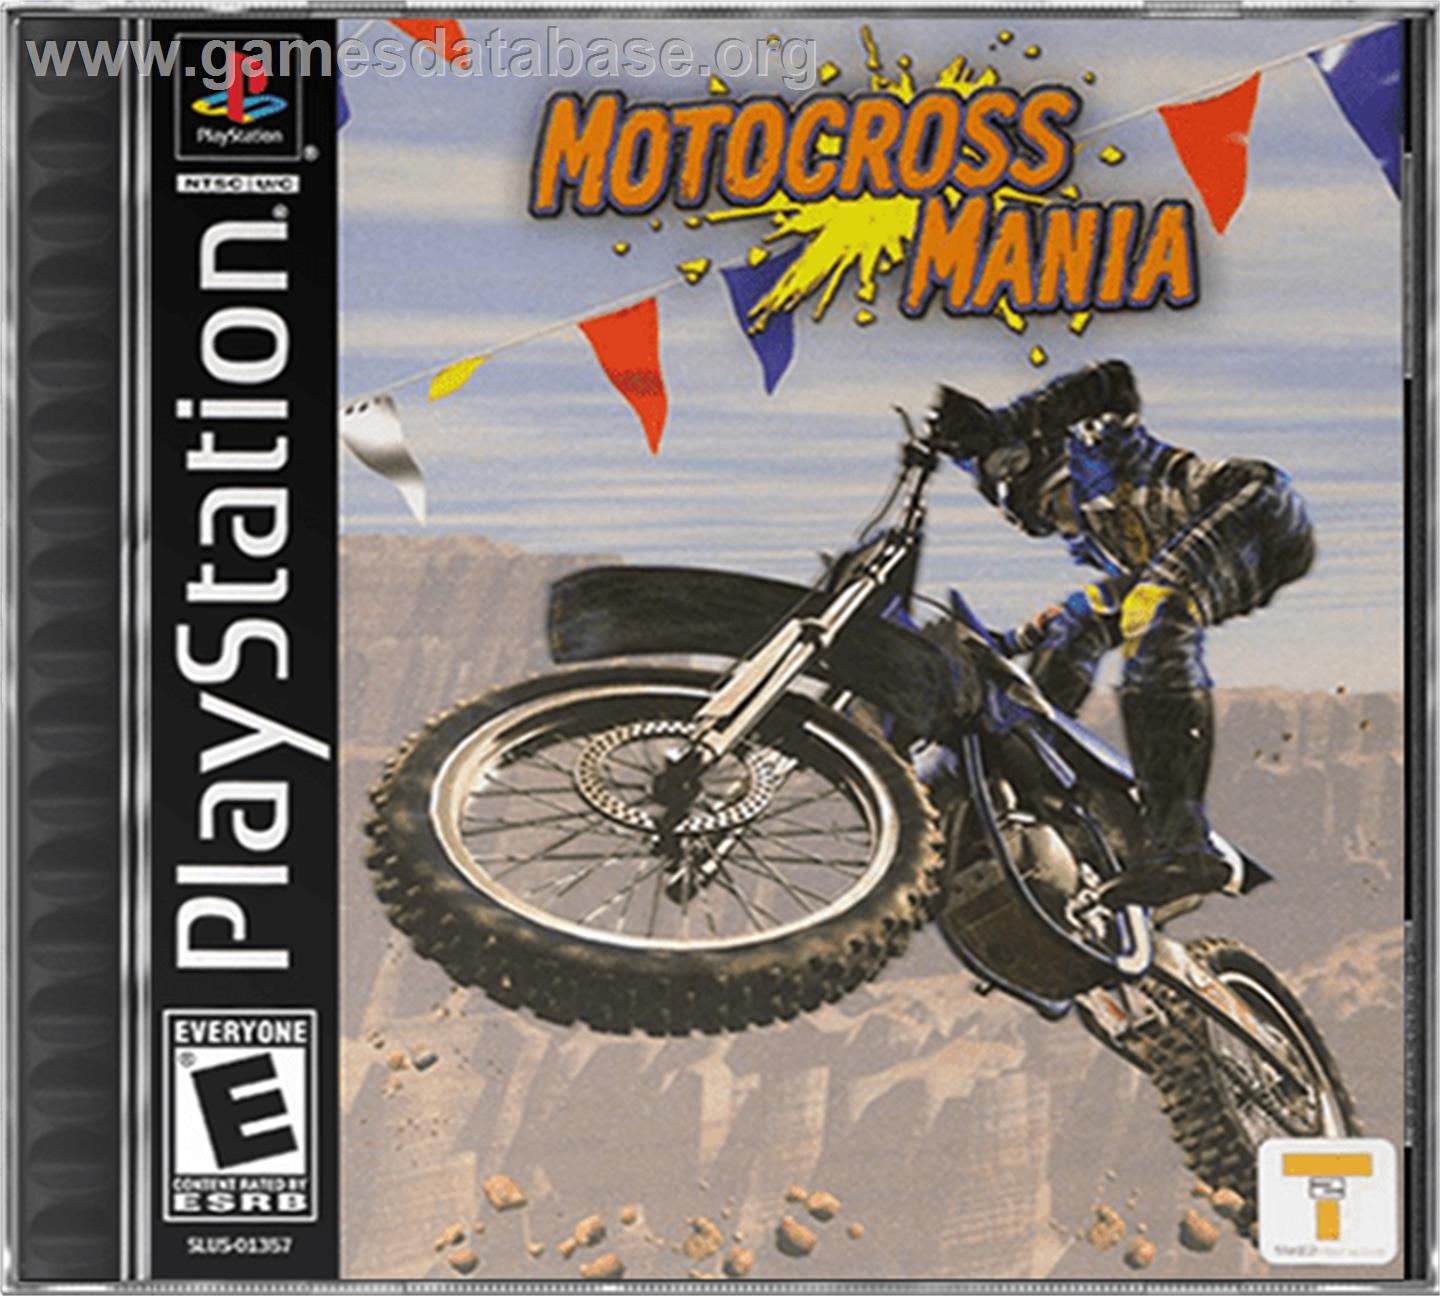 Motocross Mania - Sony Playstation - Artwork - Box